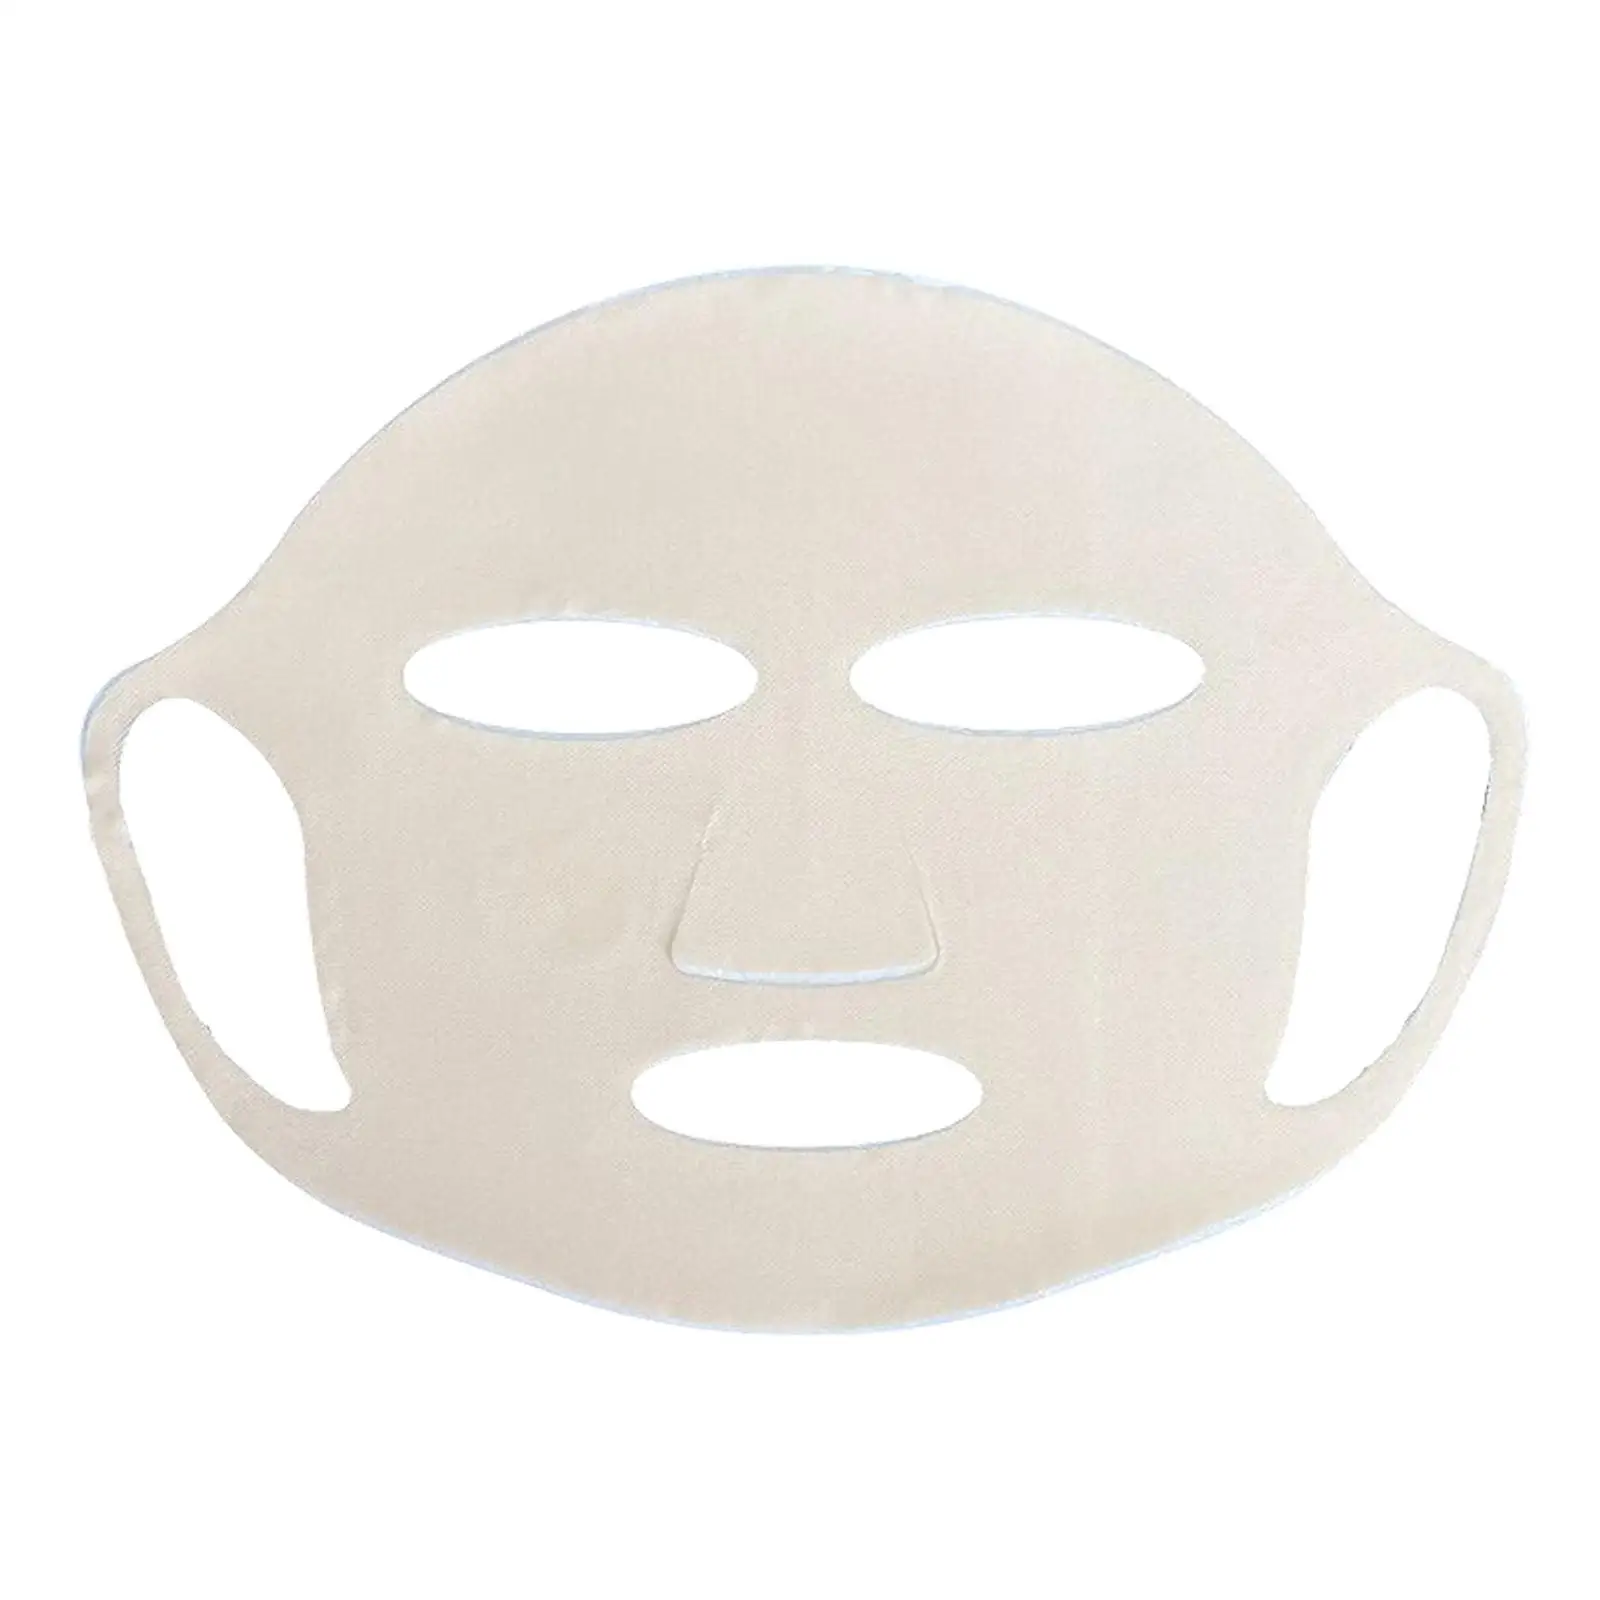 Гелевая маска для активного отдыха Успокаивающая гелевая маска для ухода за кожей для езды на велосипеде, занятий спортом на открытом воздухе, вождения автомобиля, альпинизма, пеших прогулок Изображение 0 